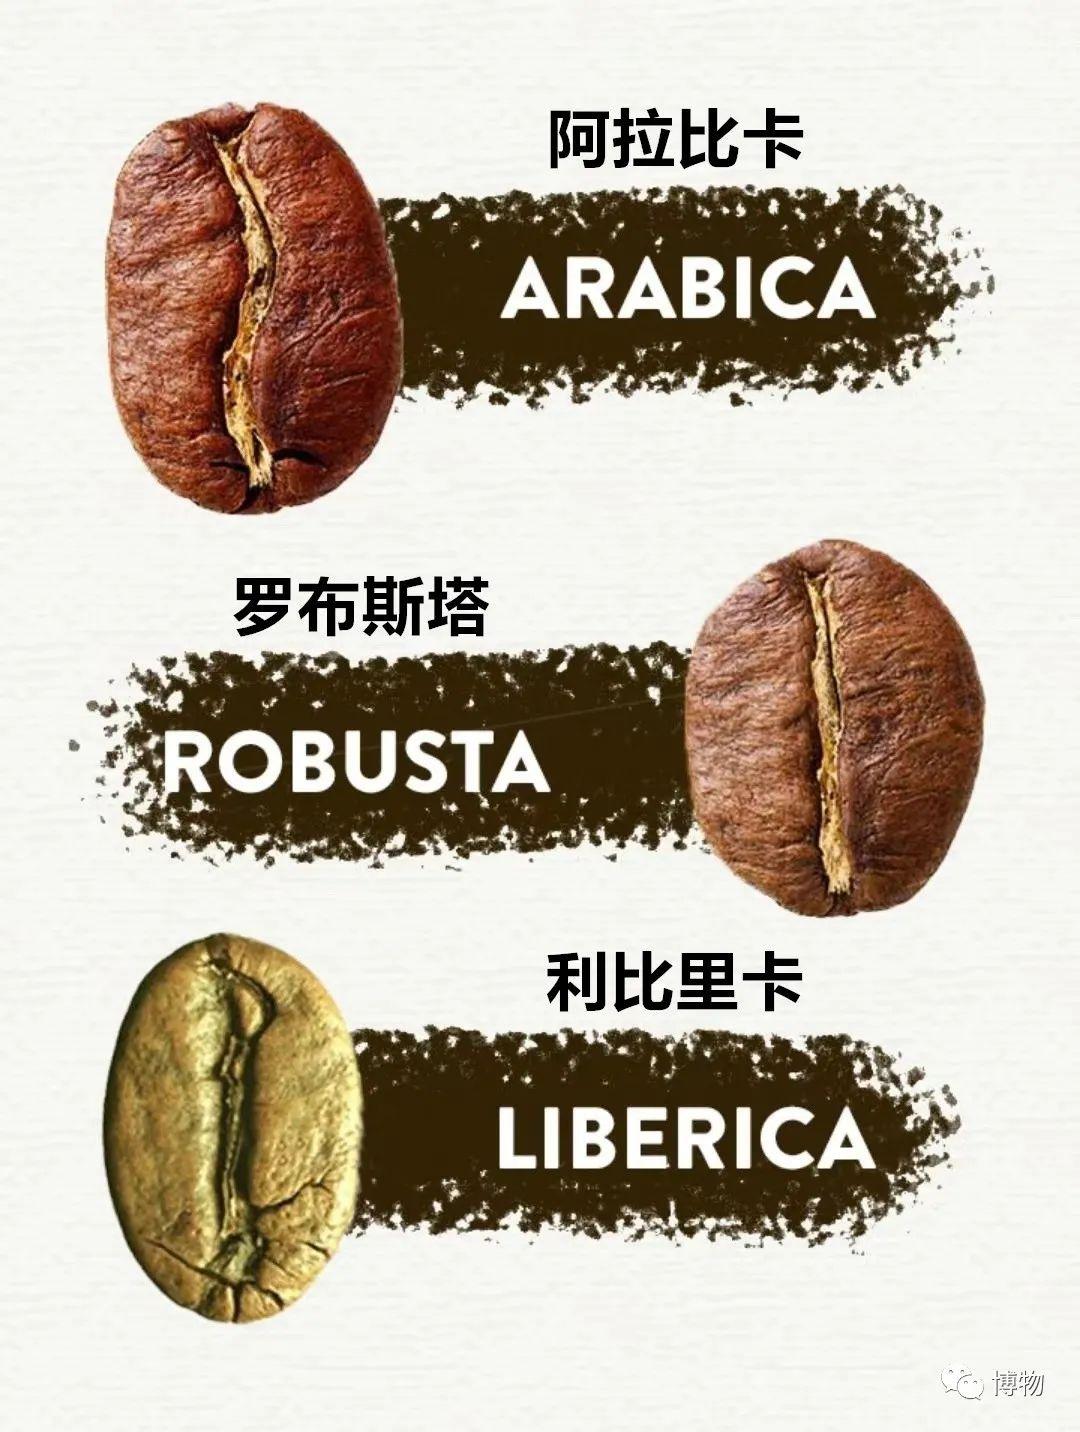 阿拉比卡咖啡豆品种 铁皮卡咖啡波旁咖啡瑰夏咖啡区别 哪个好喝 中国咖啡网